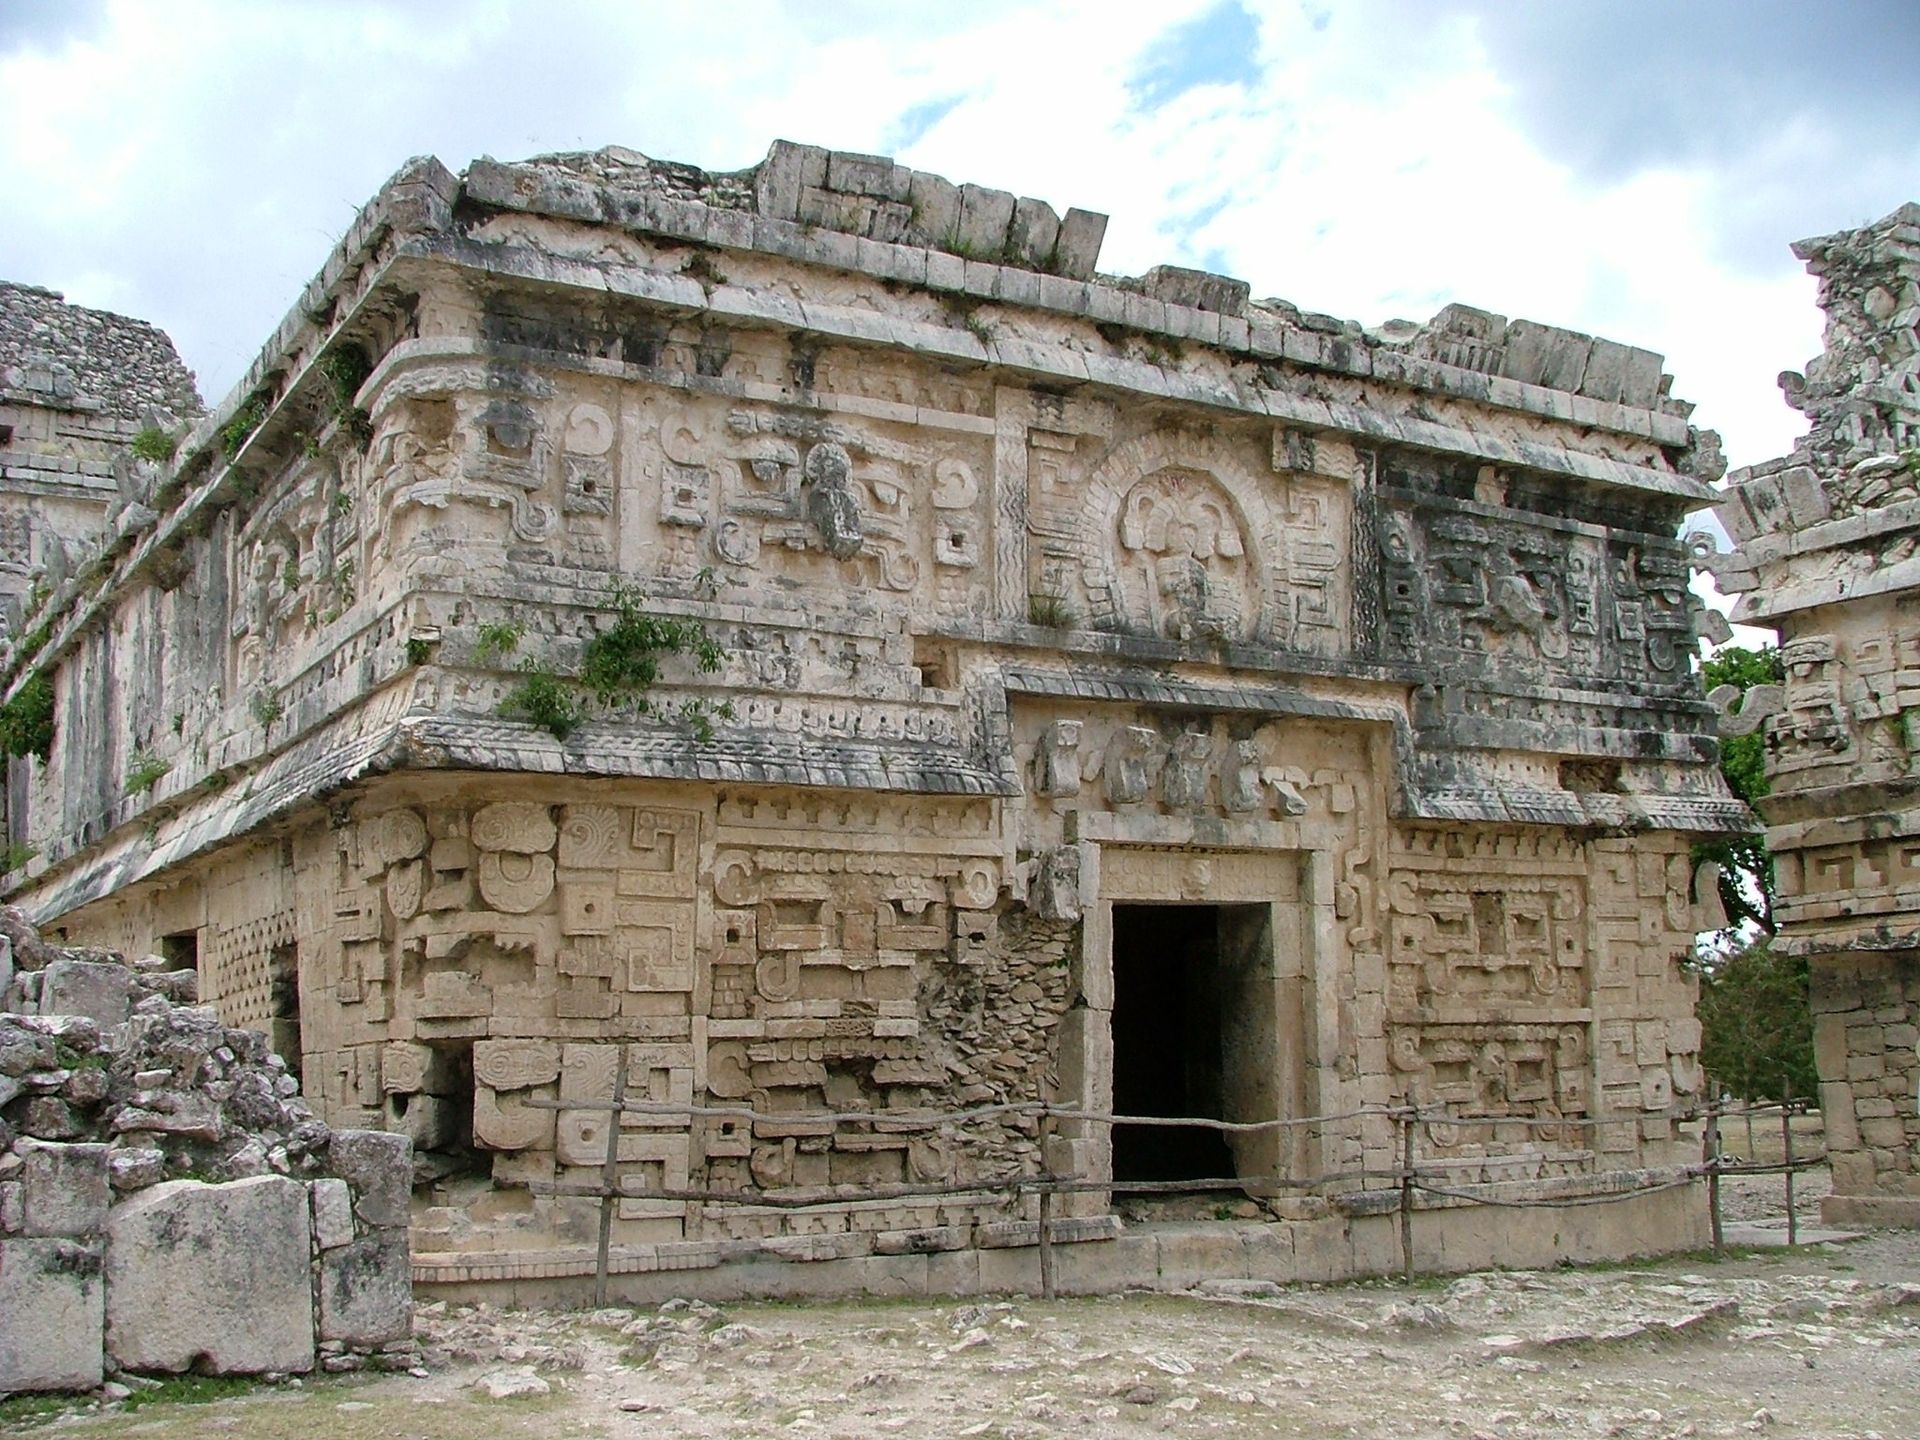 Ruins in Chichen Itza, Mexico.